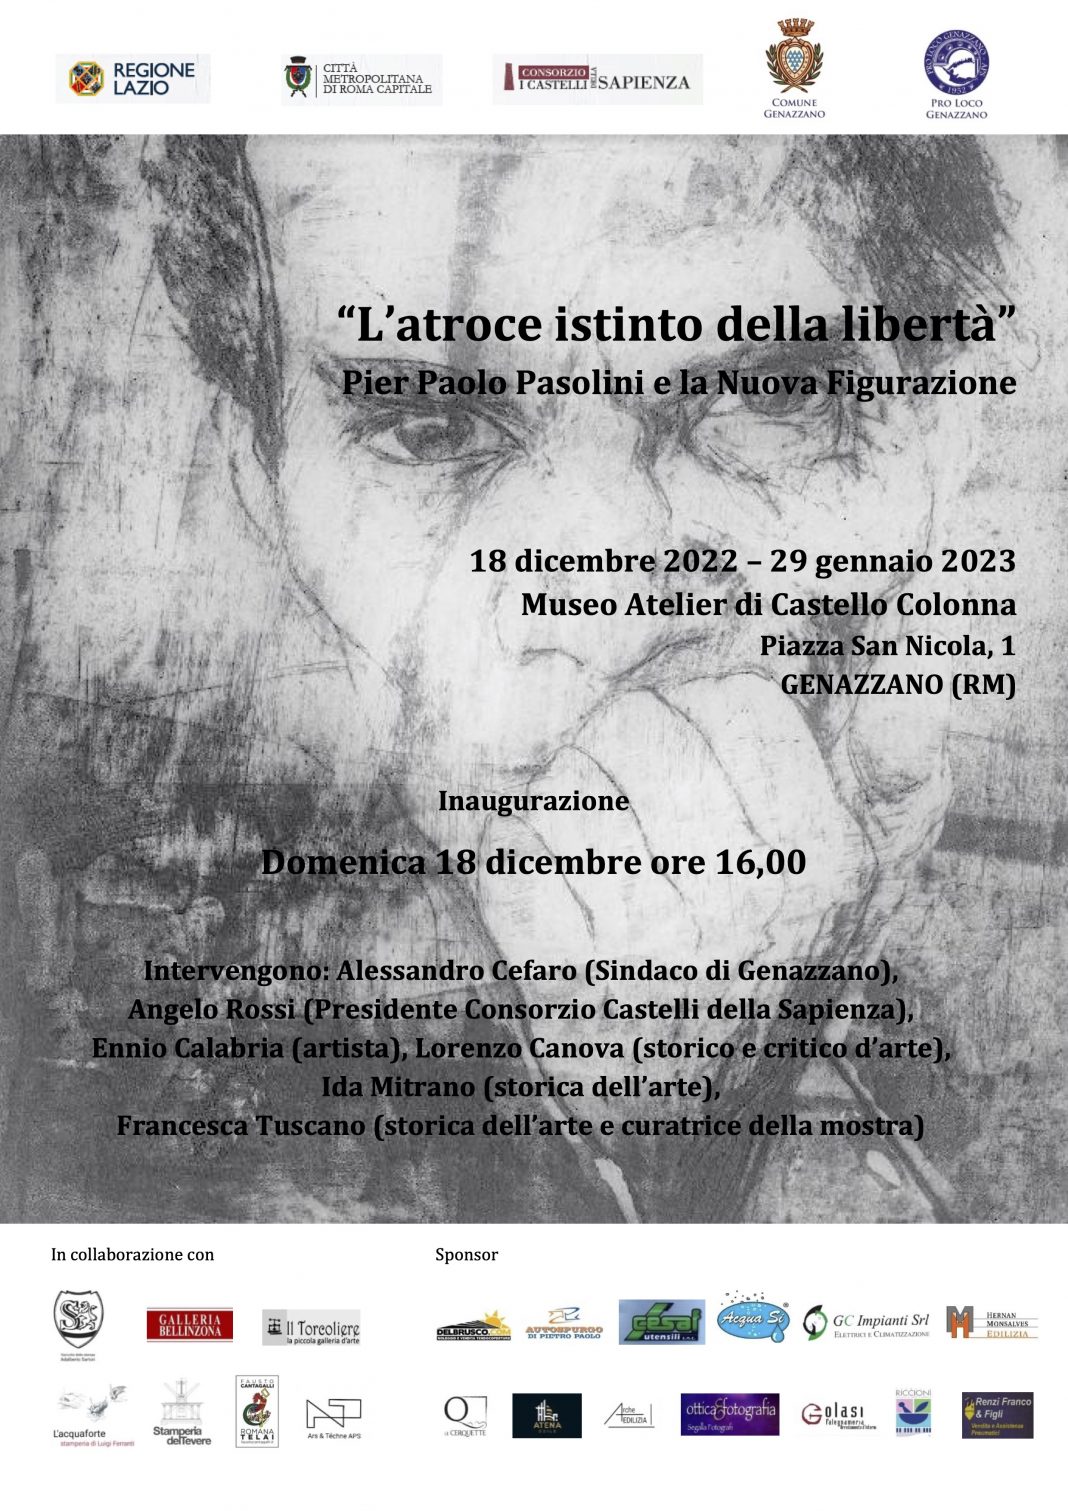 L’atroce istinto della libertà. Pier Paolo Pasolini e la Nuova Figurazionehttps://www.exibart.com/repository/media/formidable/11/img/65a/1670601789879_Locandina-Pasolini-e-la-Nuova-Figurazione_2-1068x1511.jpg